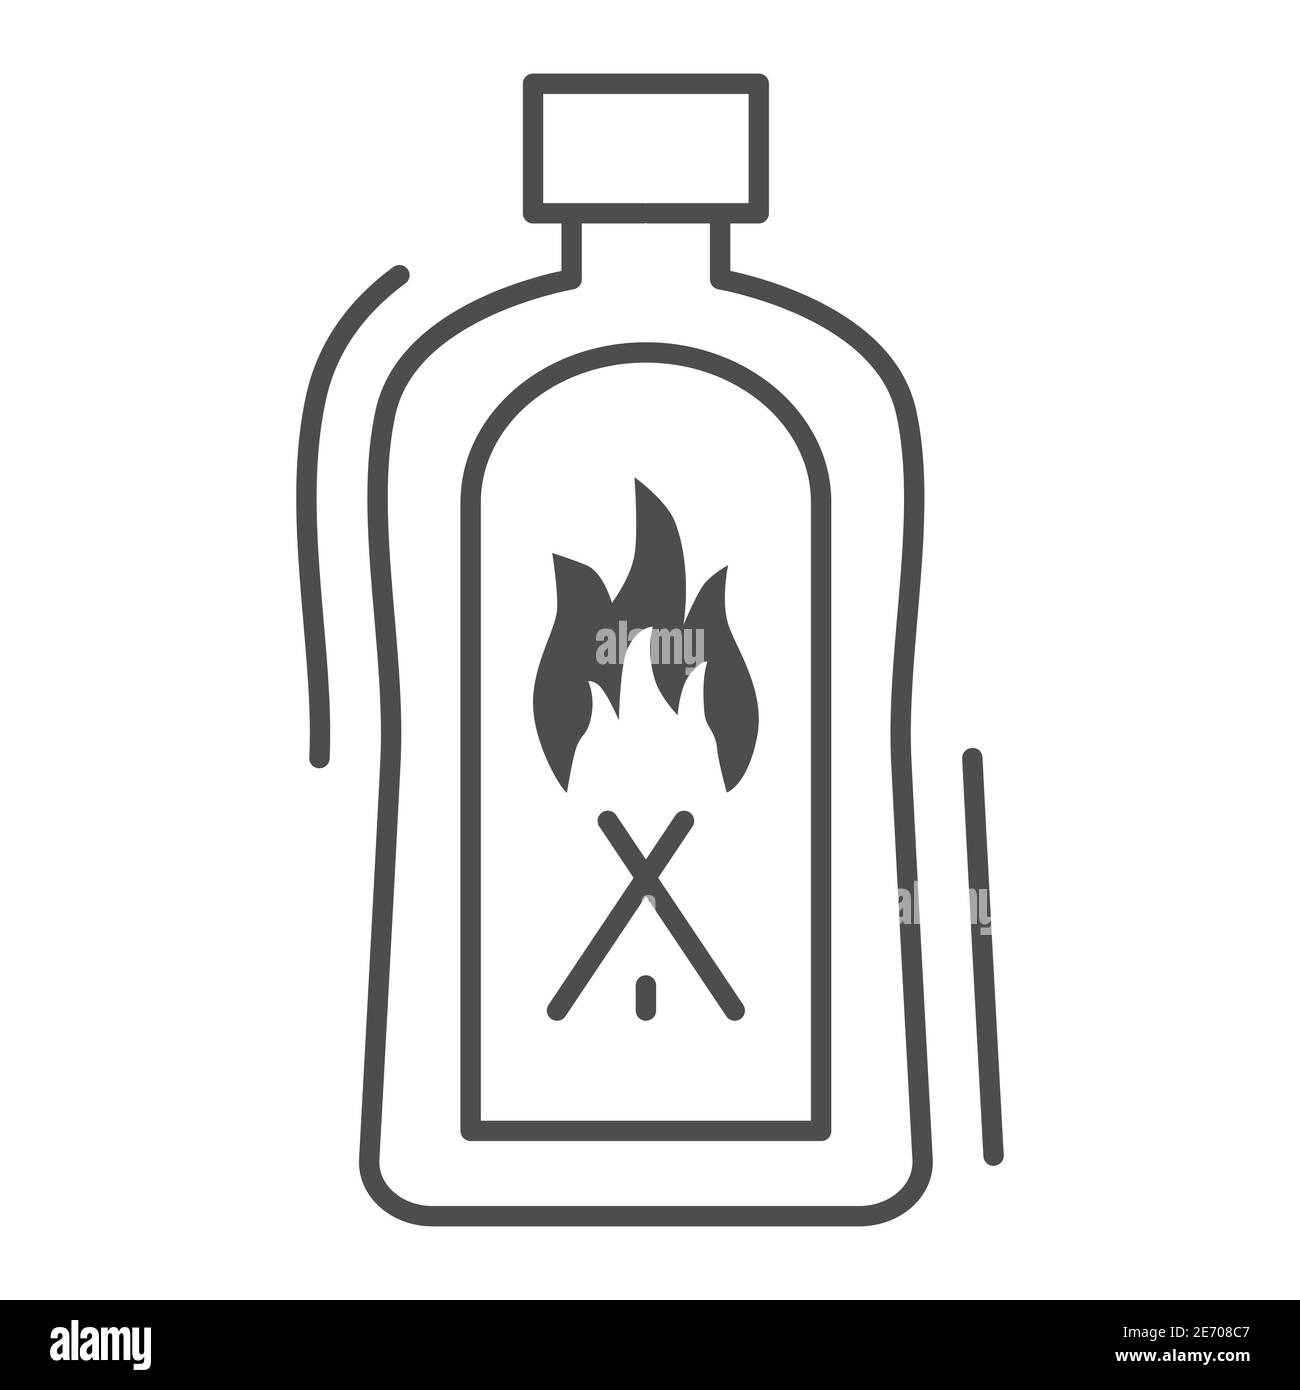 Tìm kiếm một cách để thắp lửa nhanh chóng và dễ dàng? Hãy tải Liquid for Kindling Fire để có được biểu tượng phổ biến nhất cho các loại chất lỏng dùng để đốt lửa.